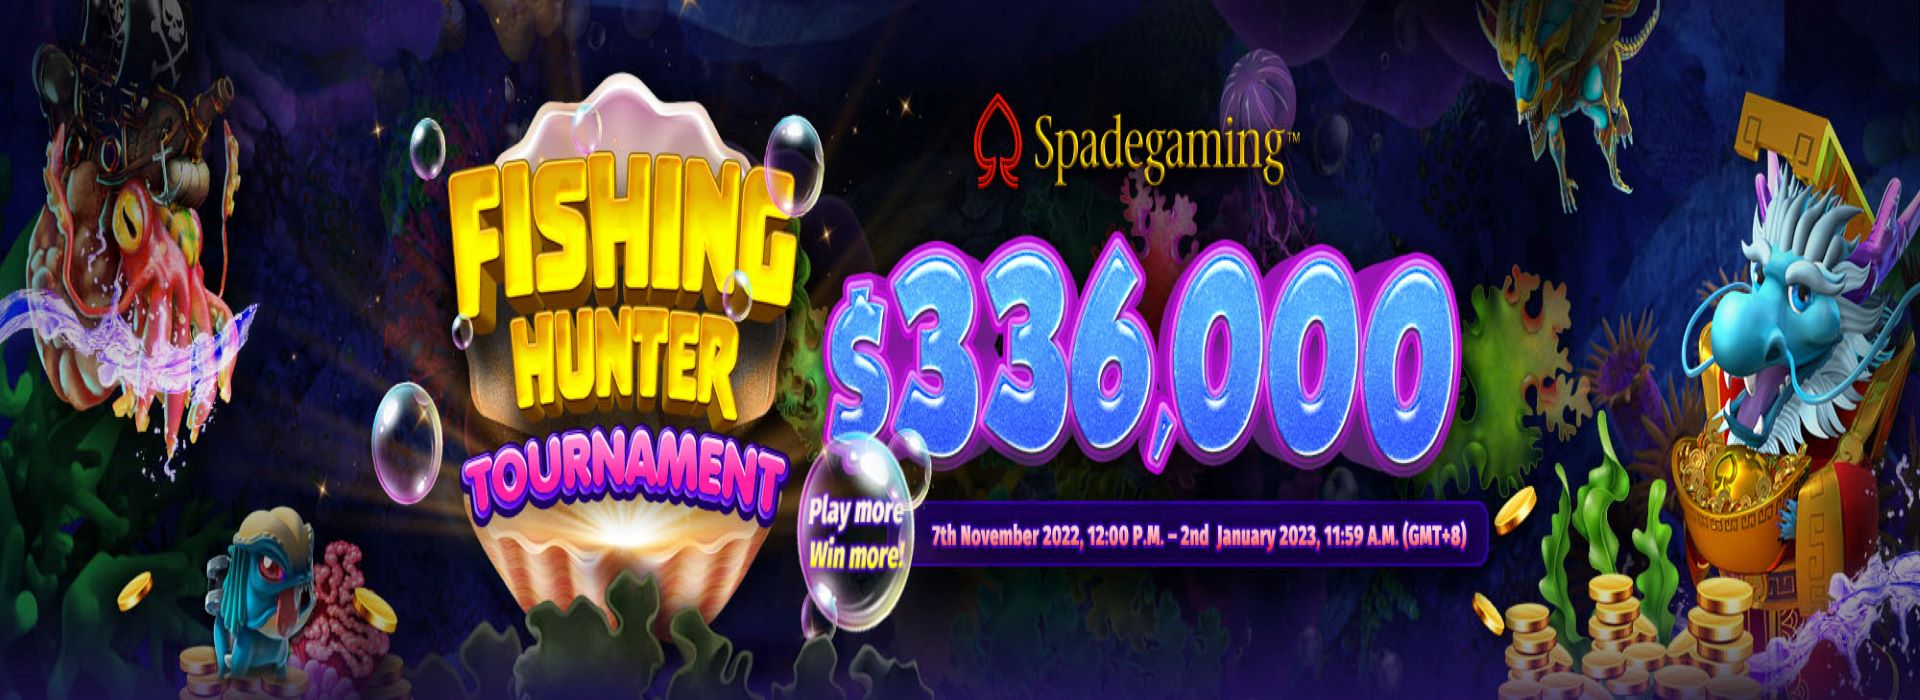 SG电子 渔水就发 锦标赛 一击暴富，打多赚多！$336,000 待赢取！